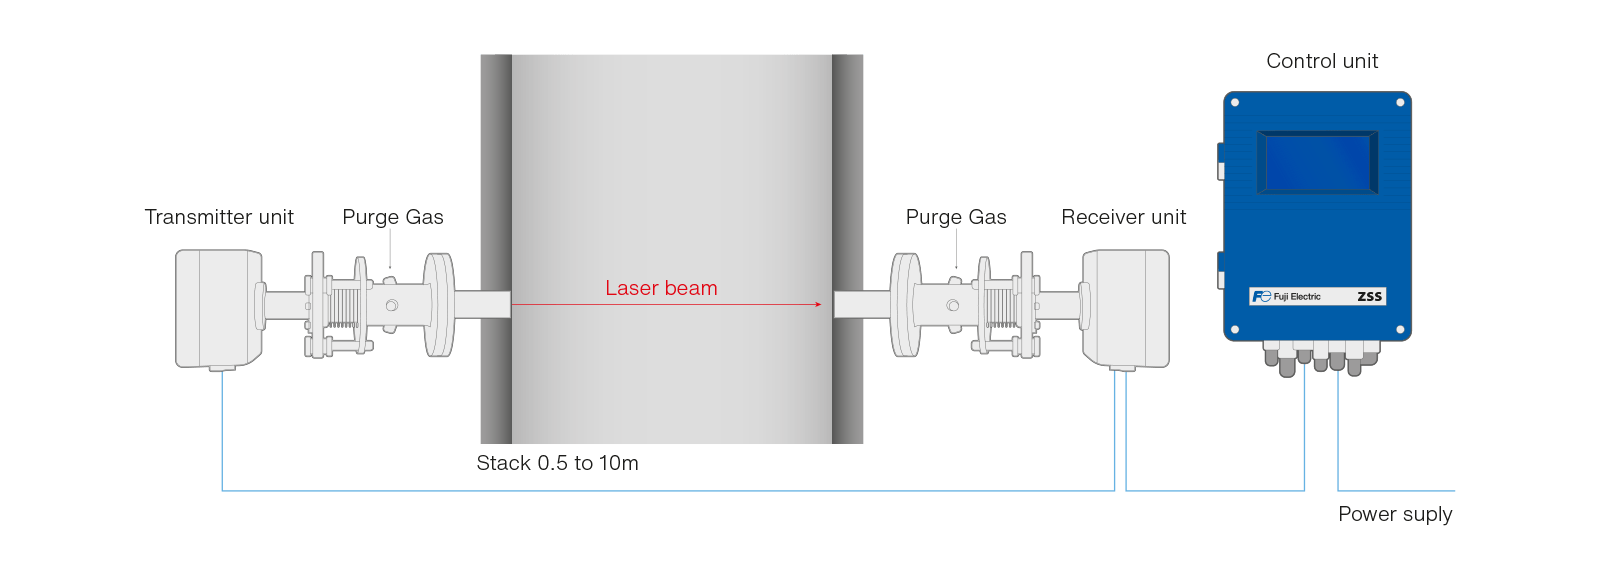 l'analizzatore laser zss consente la combustione con un bassissimo eccesso d'aria schema en